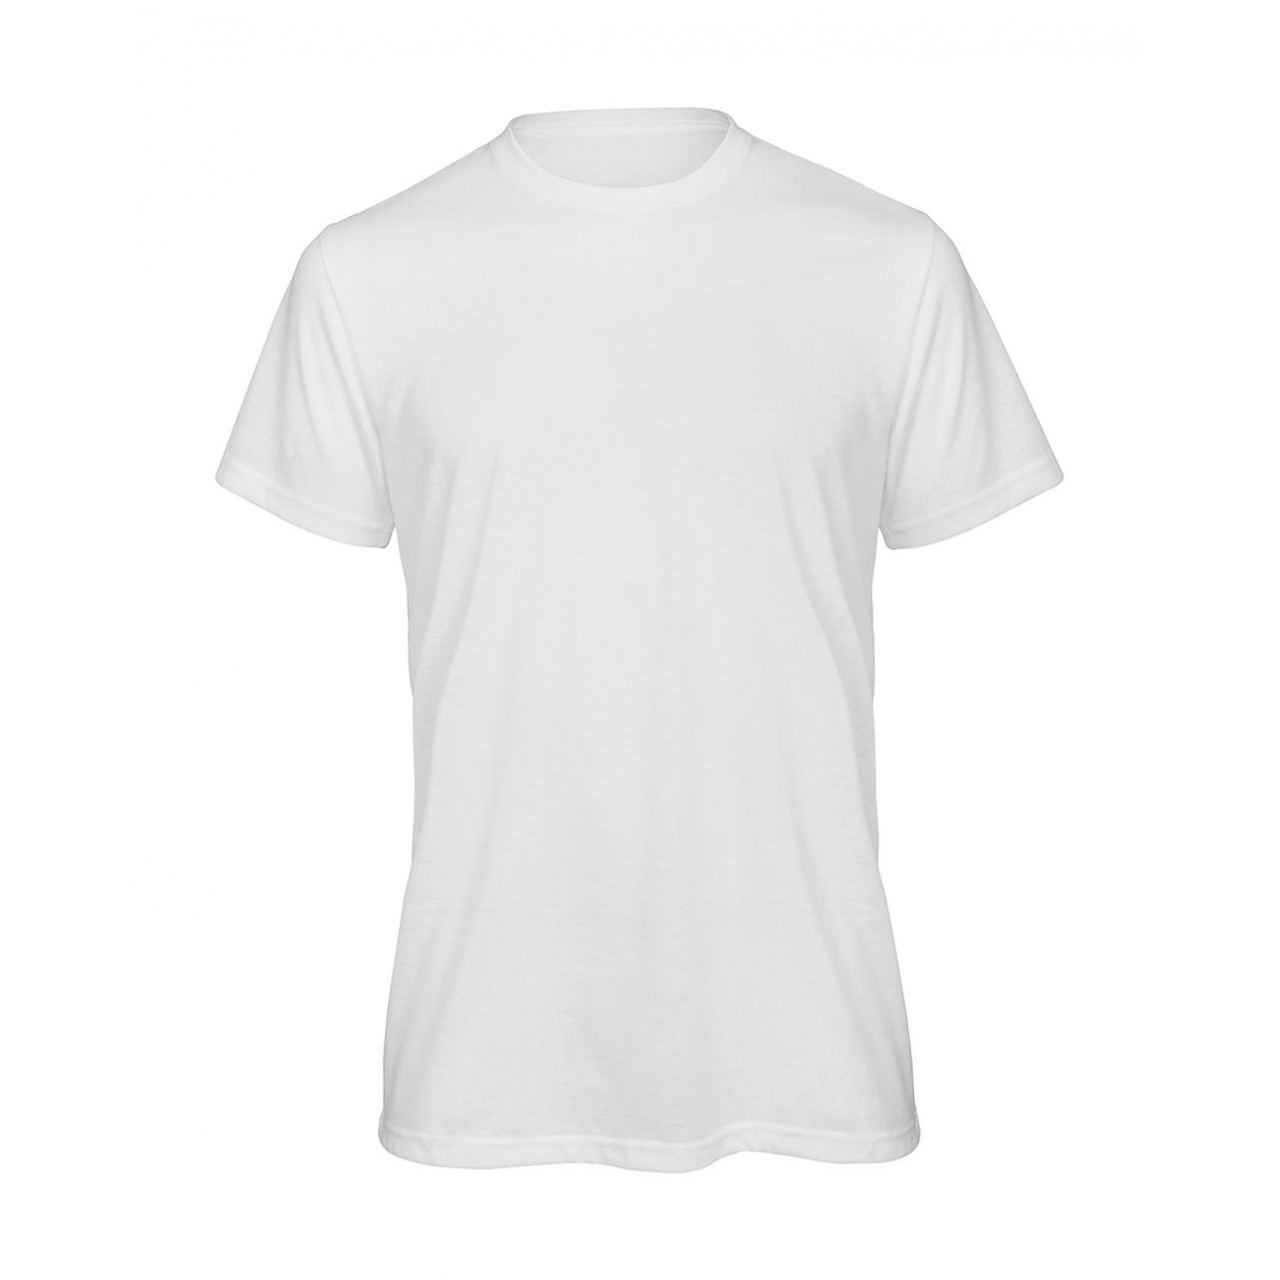 Triko pánské B&C Sublimation/men T-Shirt - bílé, XL